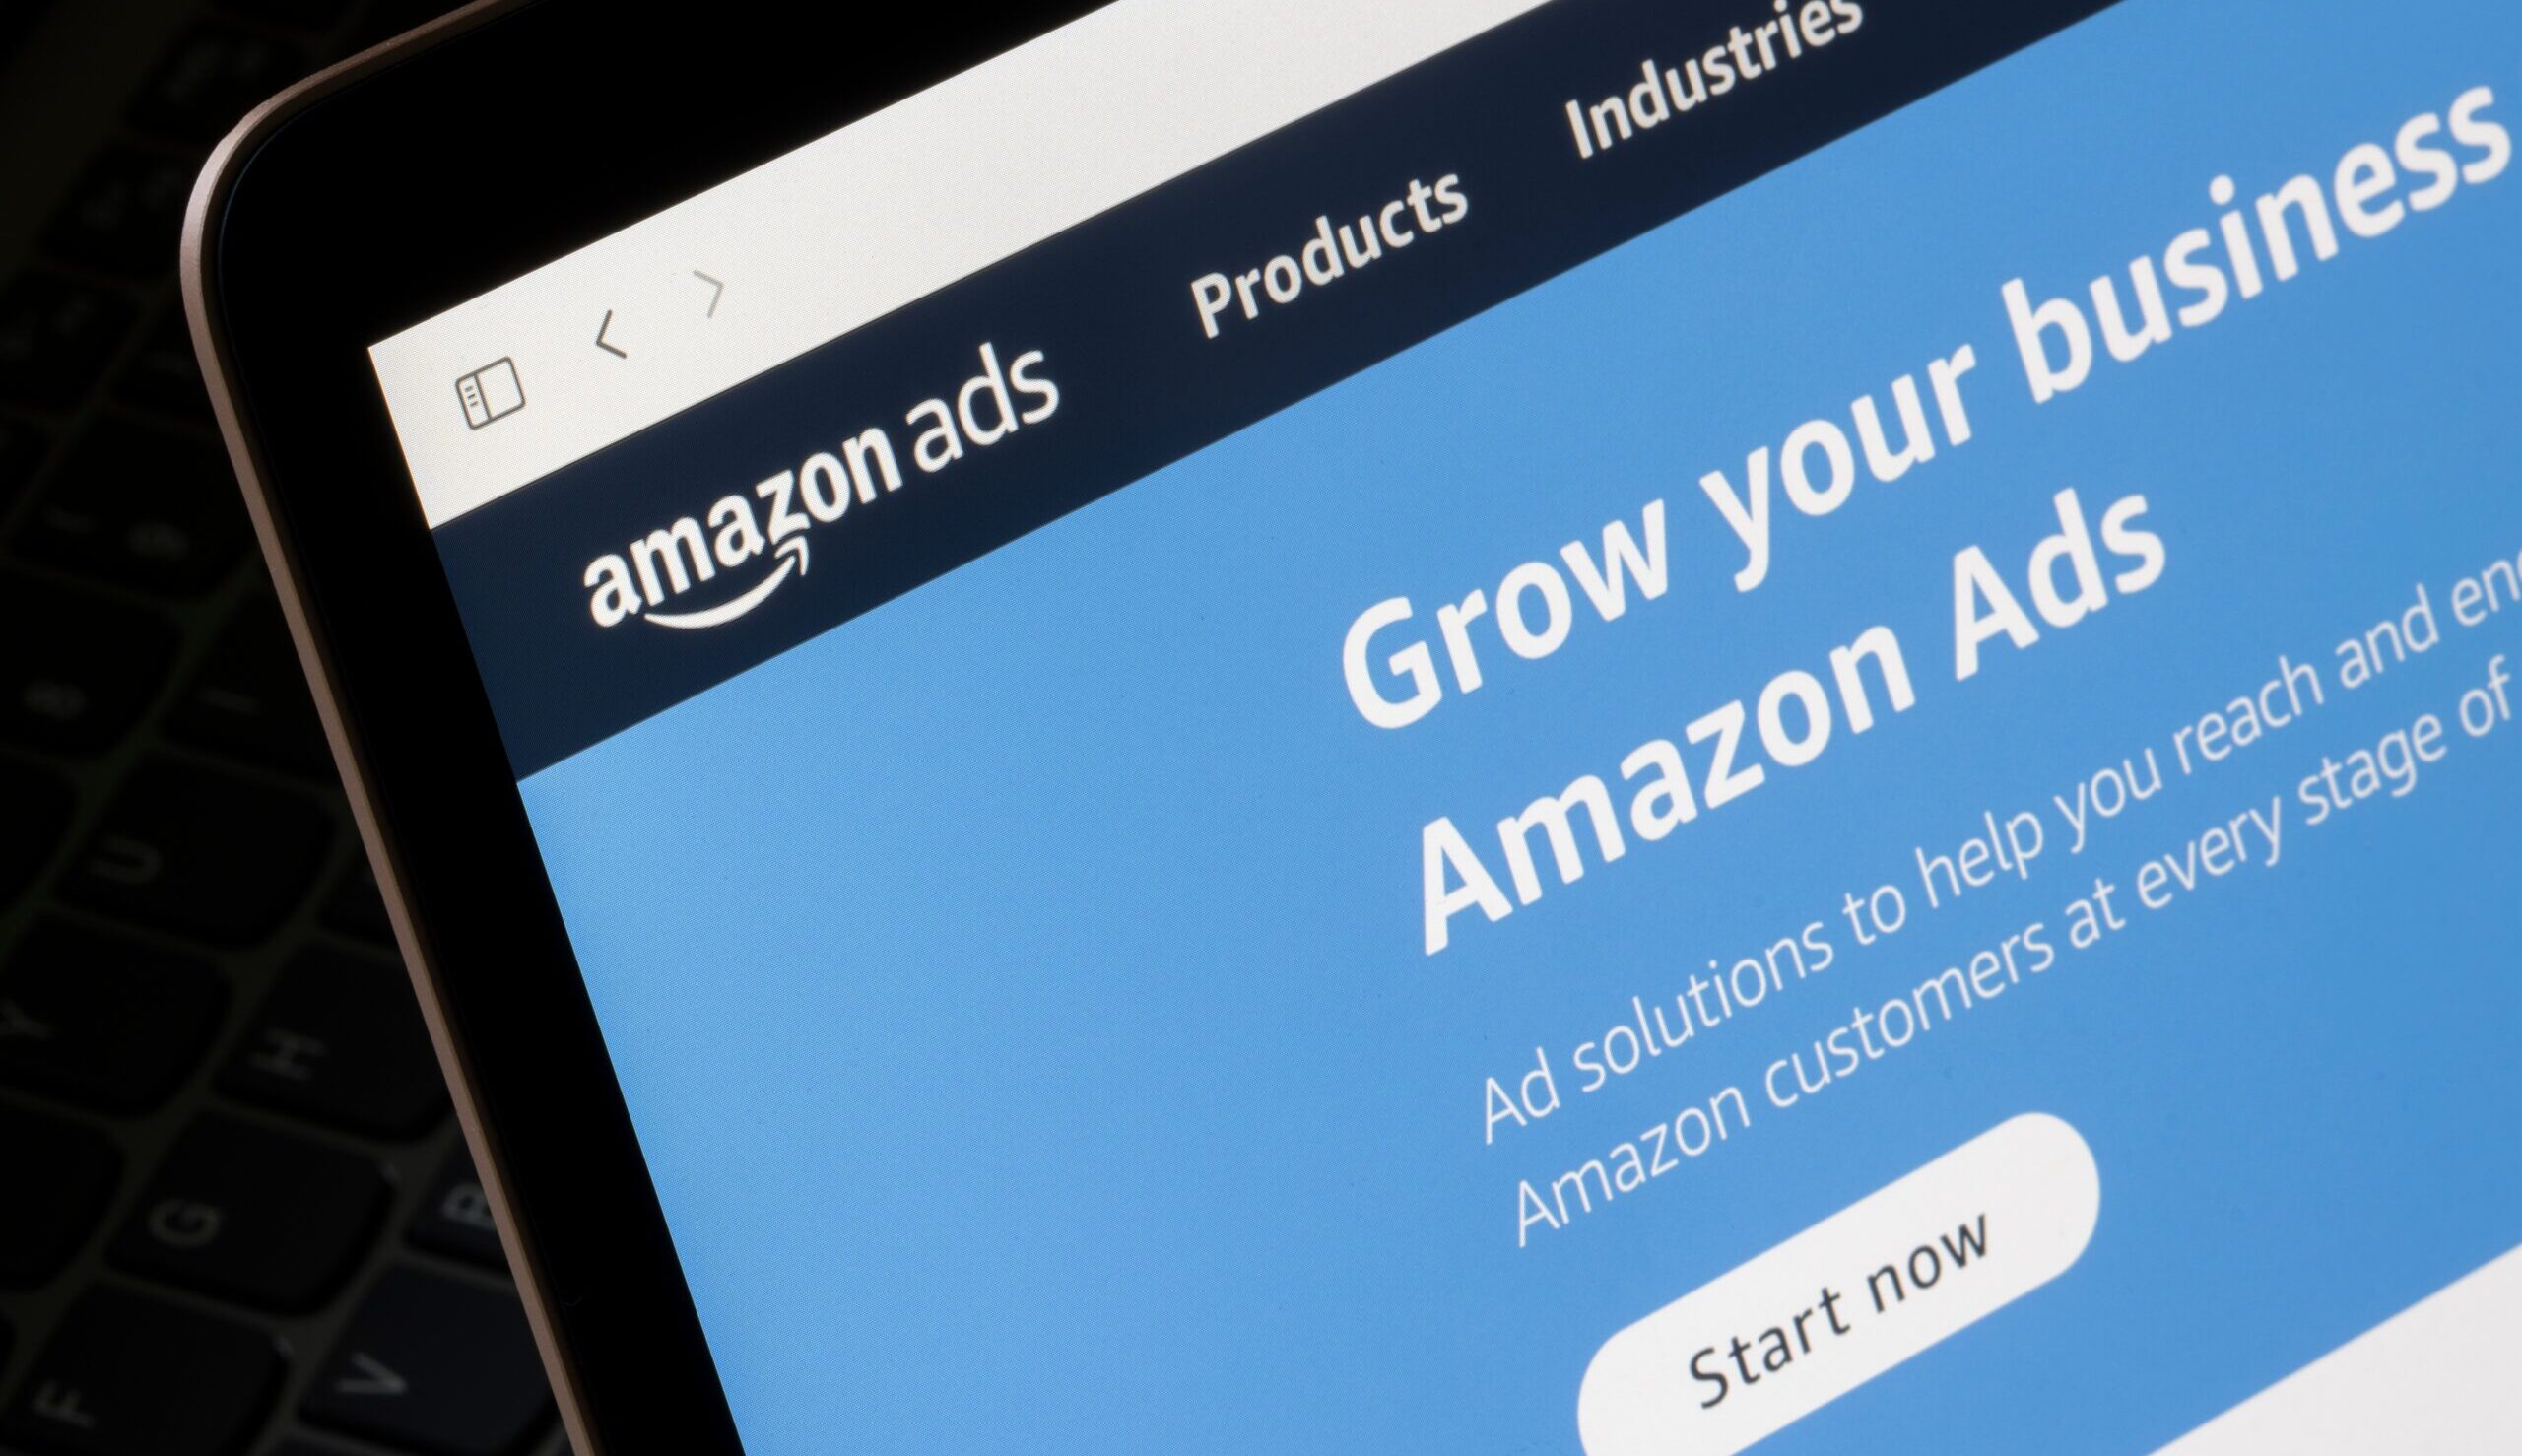 Amazon Posts: Maximale Produktpräsentation für Ihren Verkaufserfolg